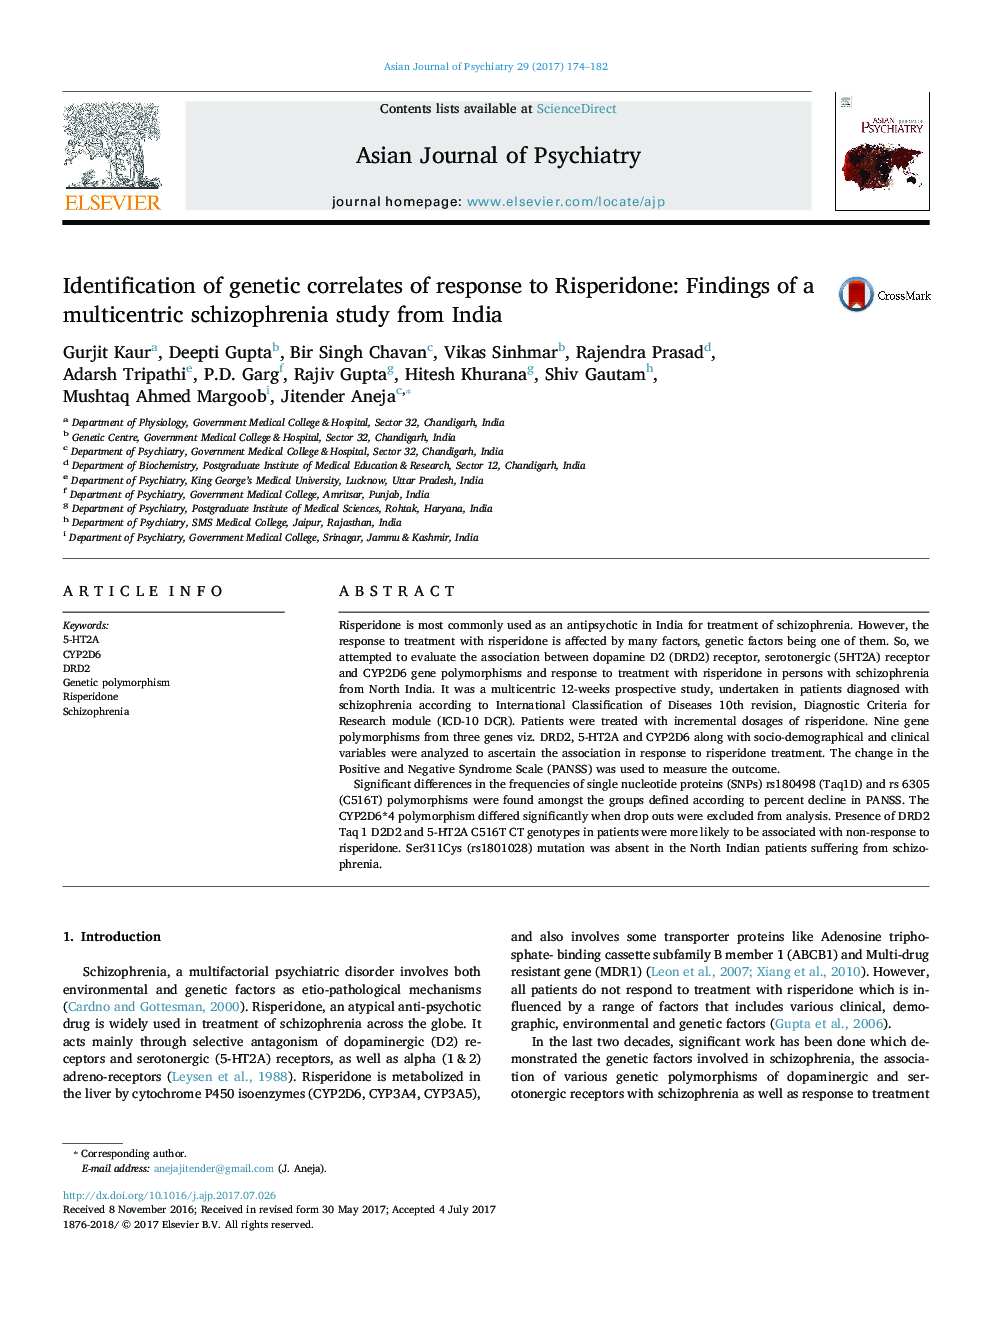 شناسایی همبستگی ژنتیکی پاسخ به ریسپریدون: یافته های یک مطالعه چندزیستی اسکیزوفرنی از هند 